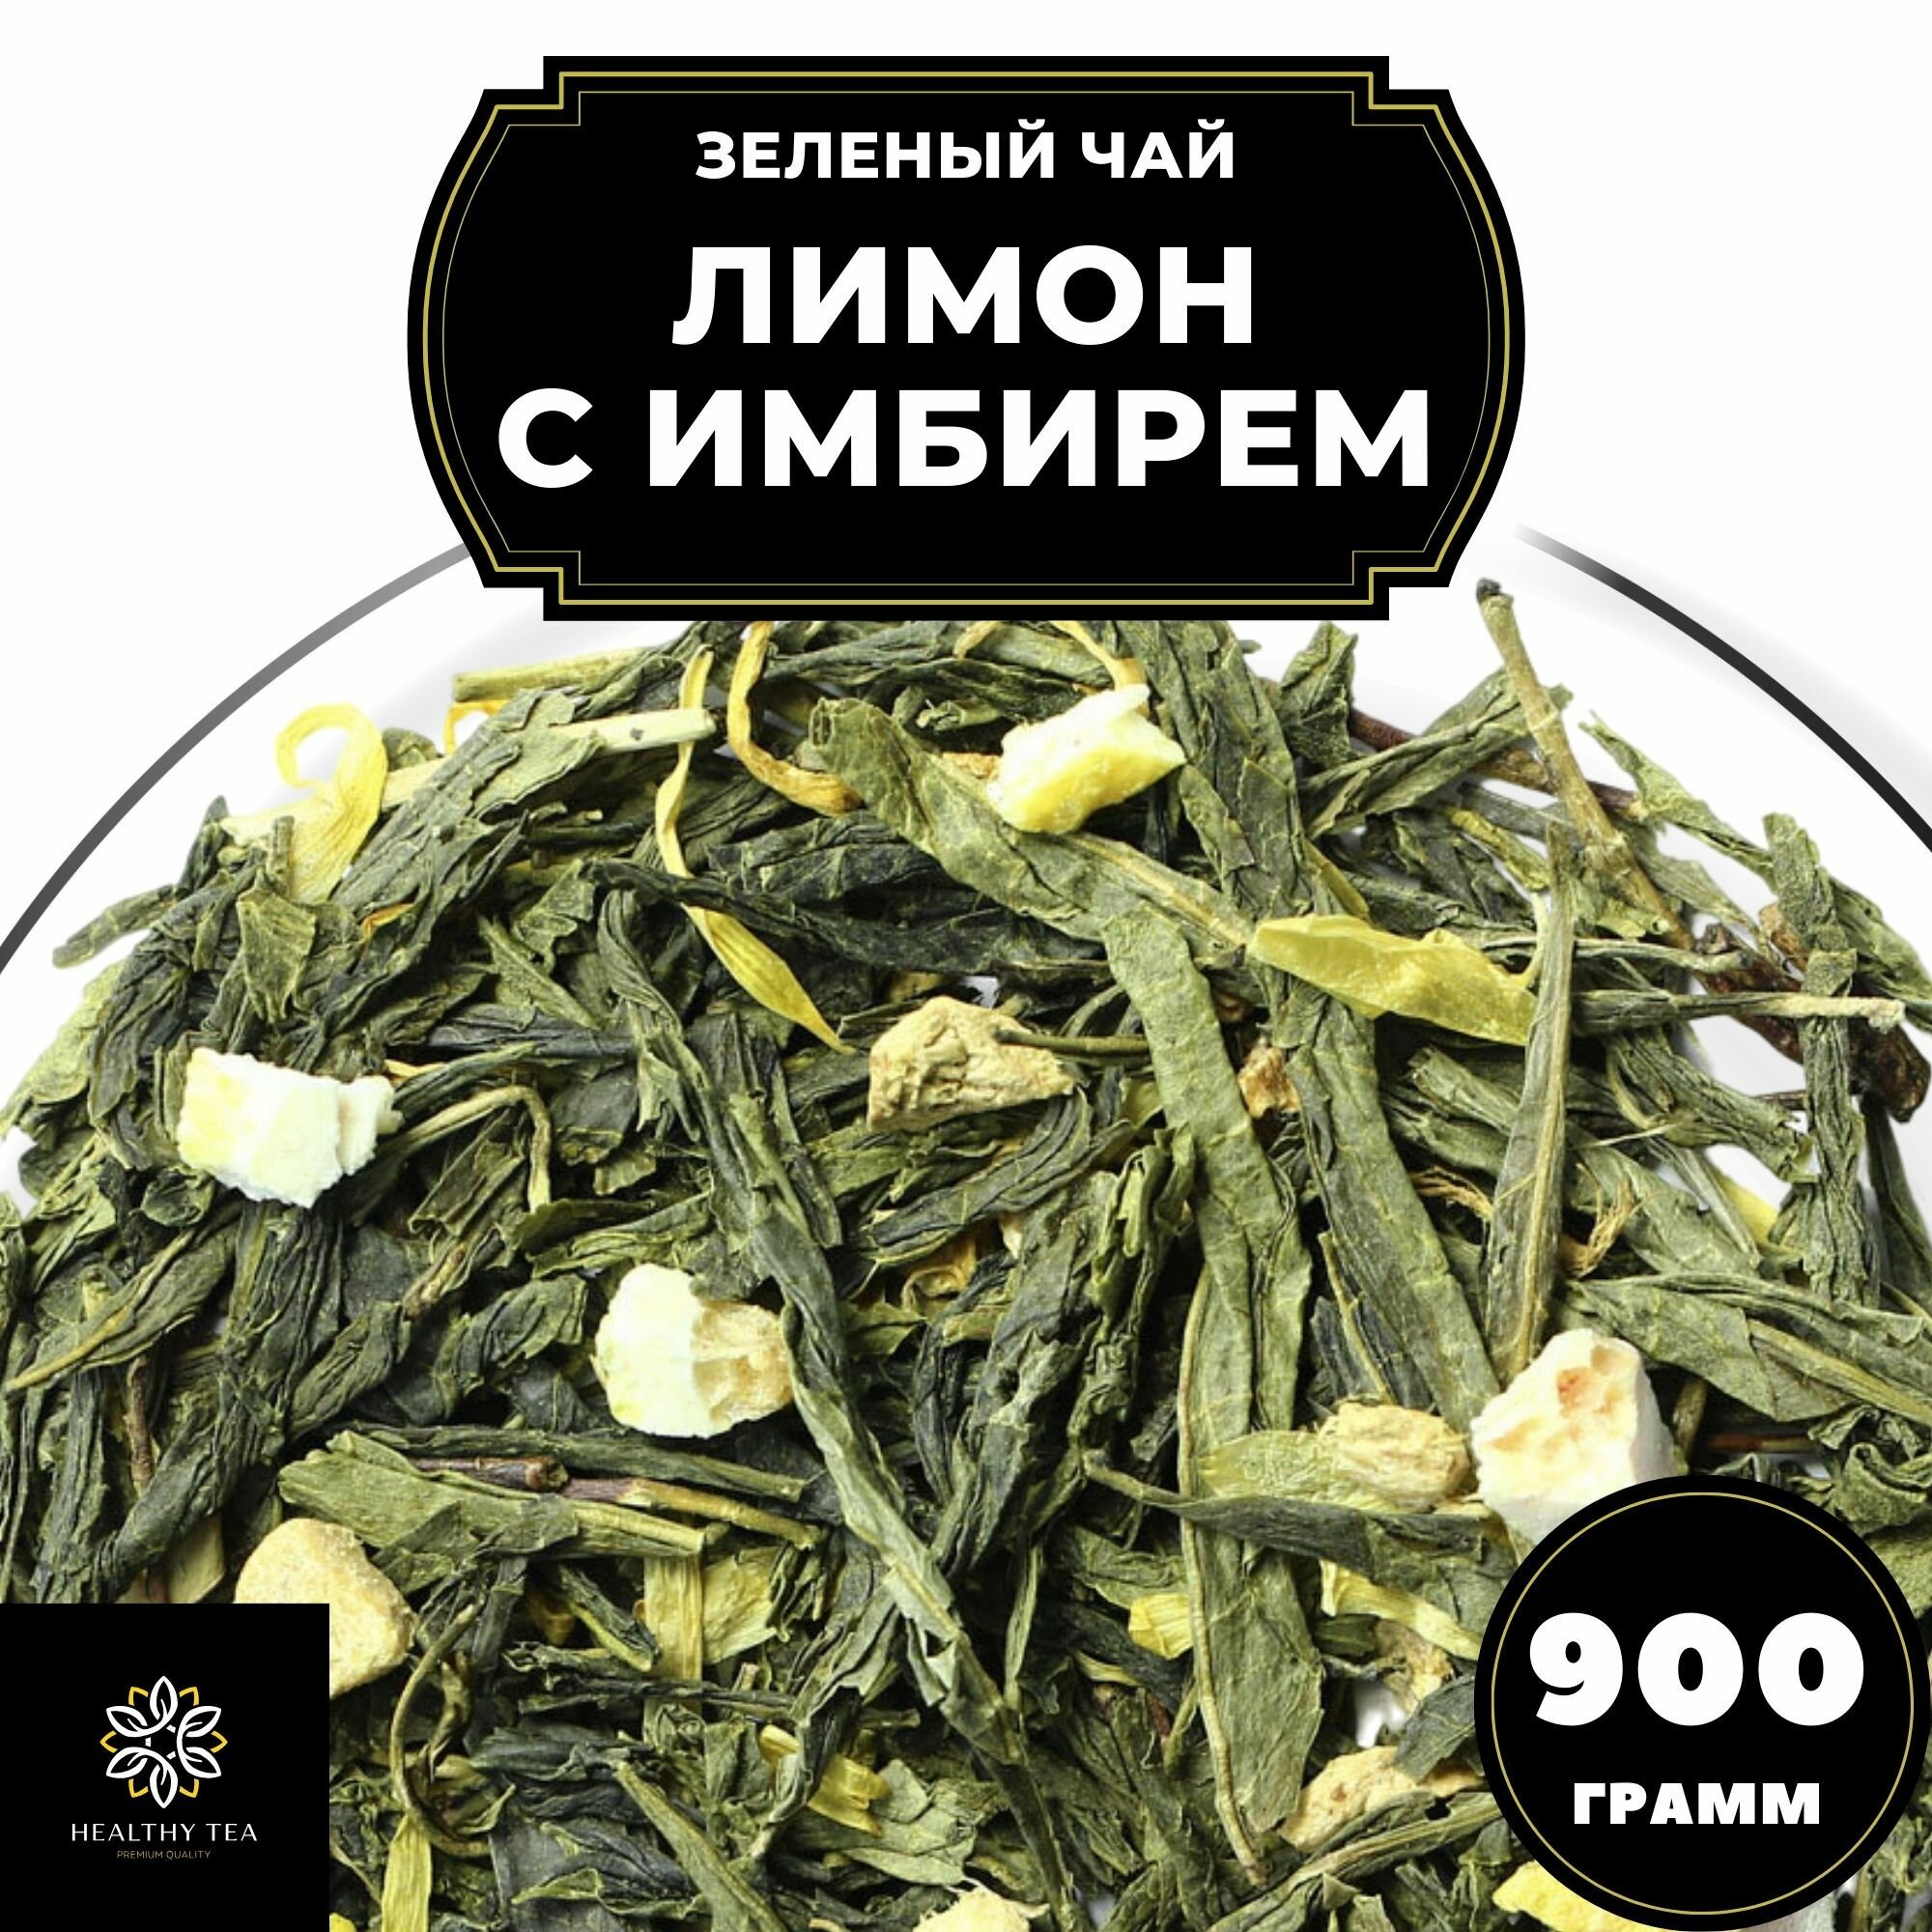 Китайский Зеленый чай с имбирем, лимоном и календулой Лимон с имбирем Полезный чай / HEALTHY TEA, 900 г